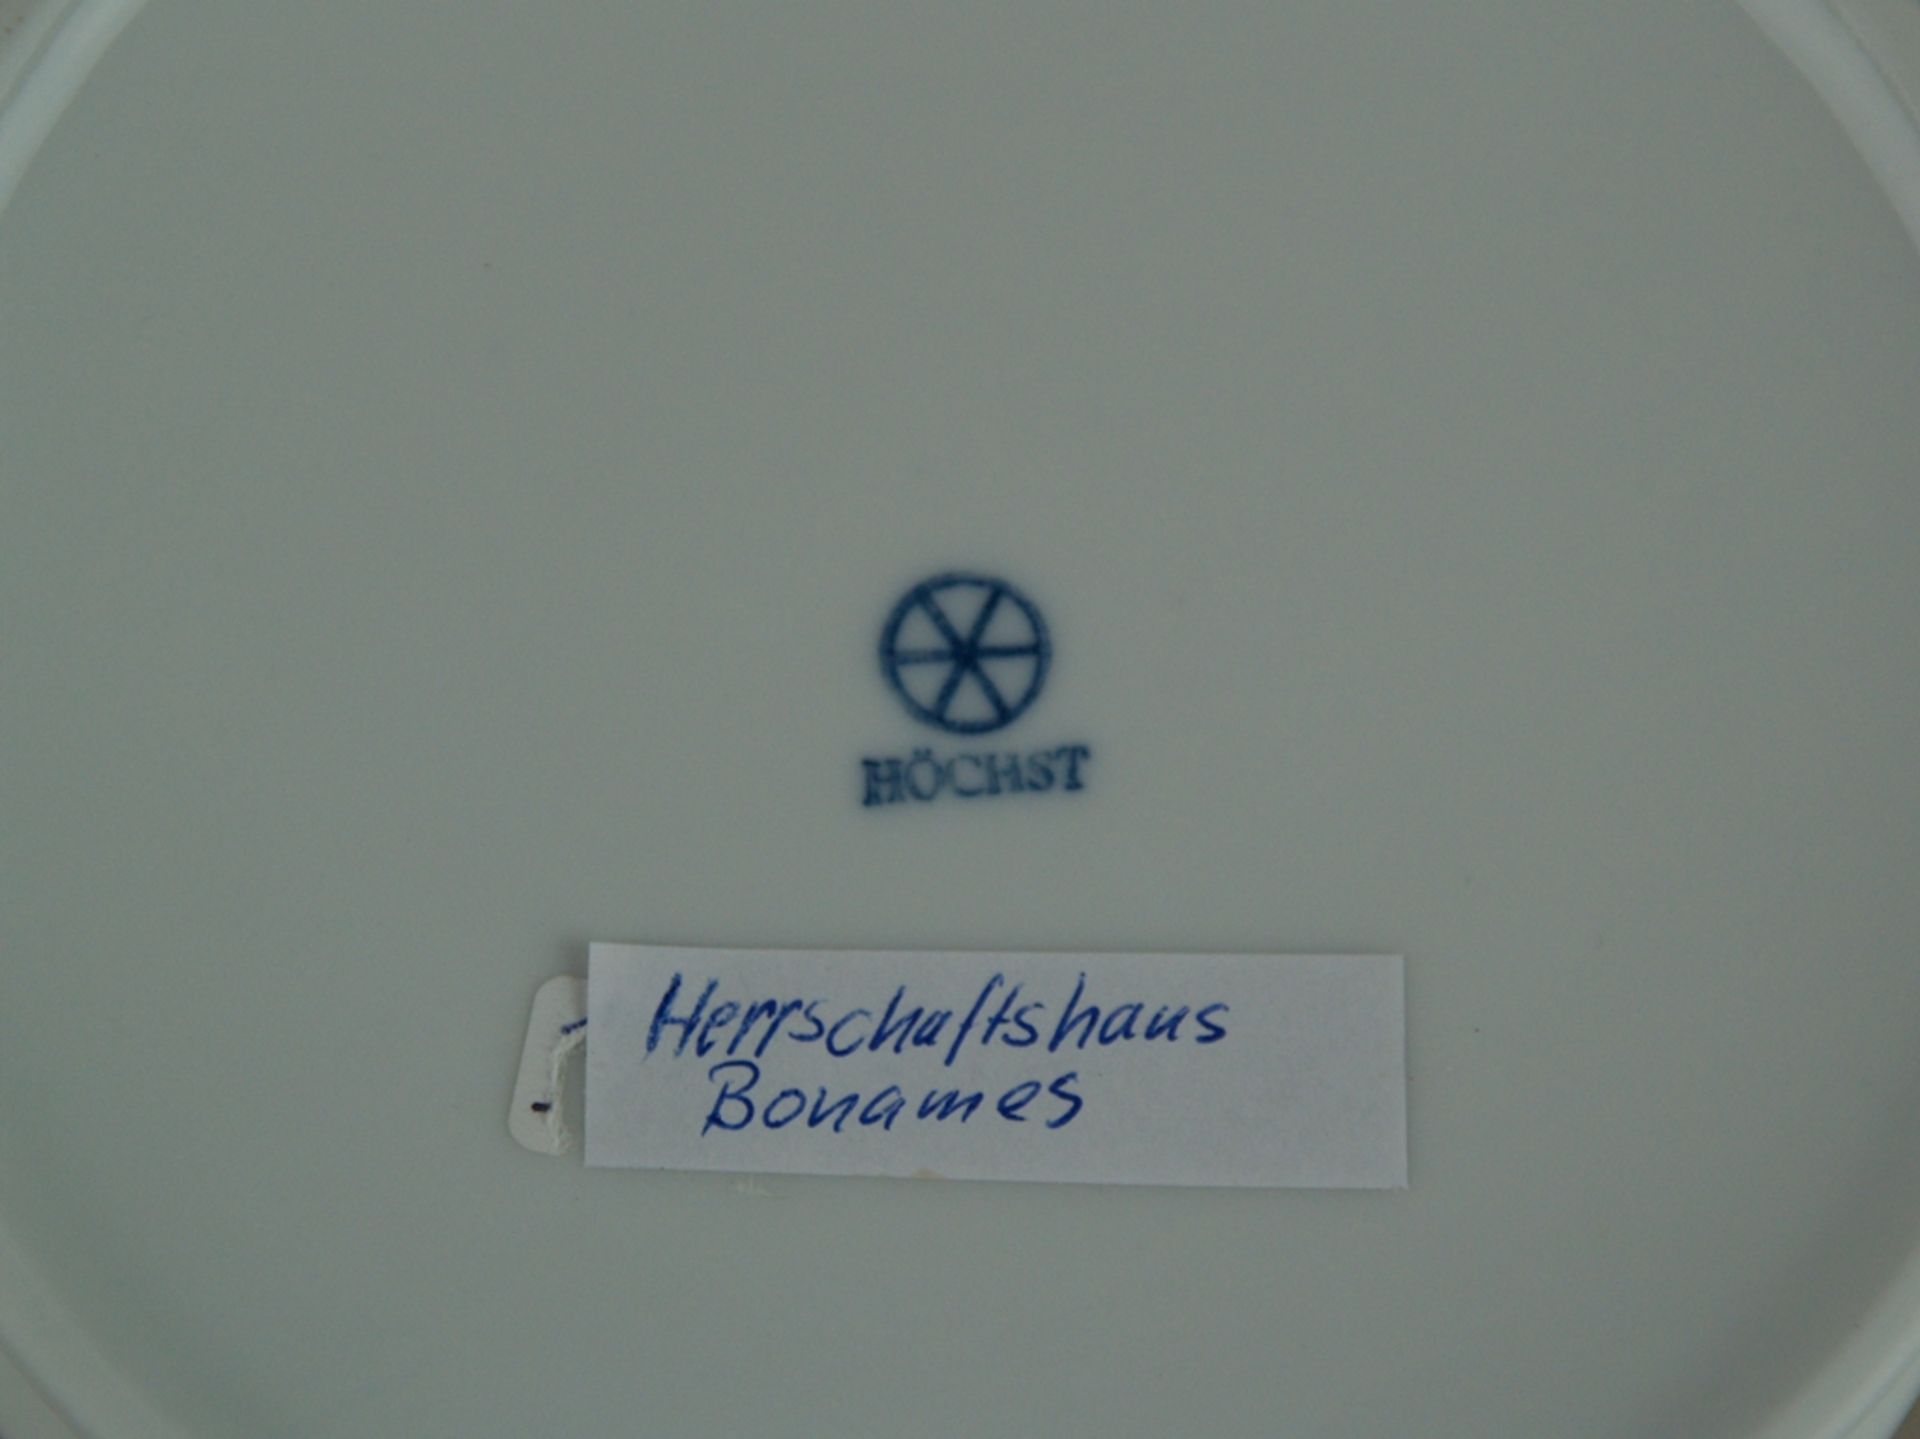 Deckeldose - Hoechst blaue Radmarke, 20.Jh., weißer Scherben/Biskuitporzellan, Deckel mit - Bild 2 aus 2